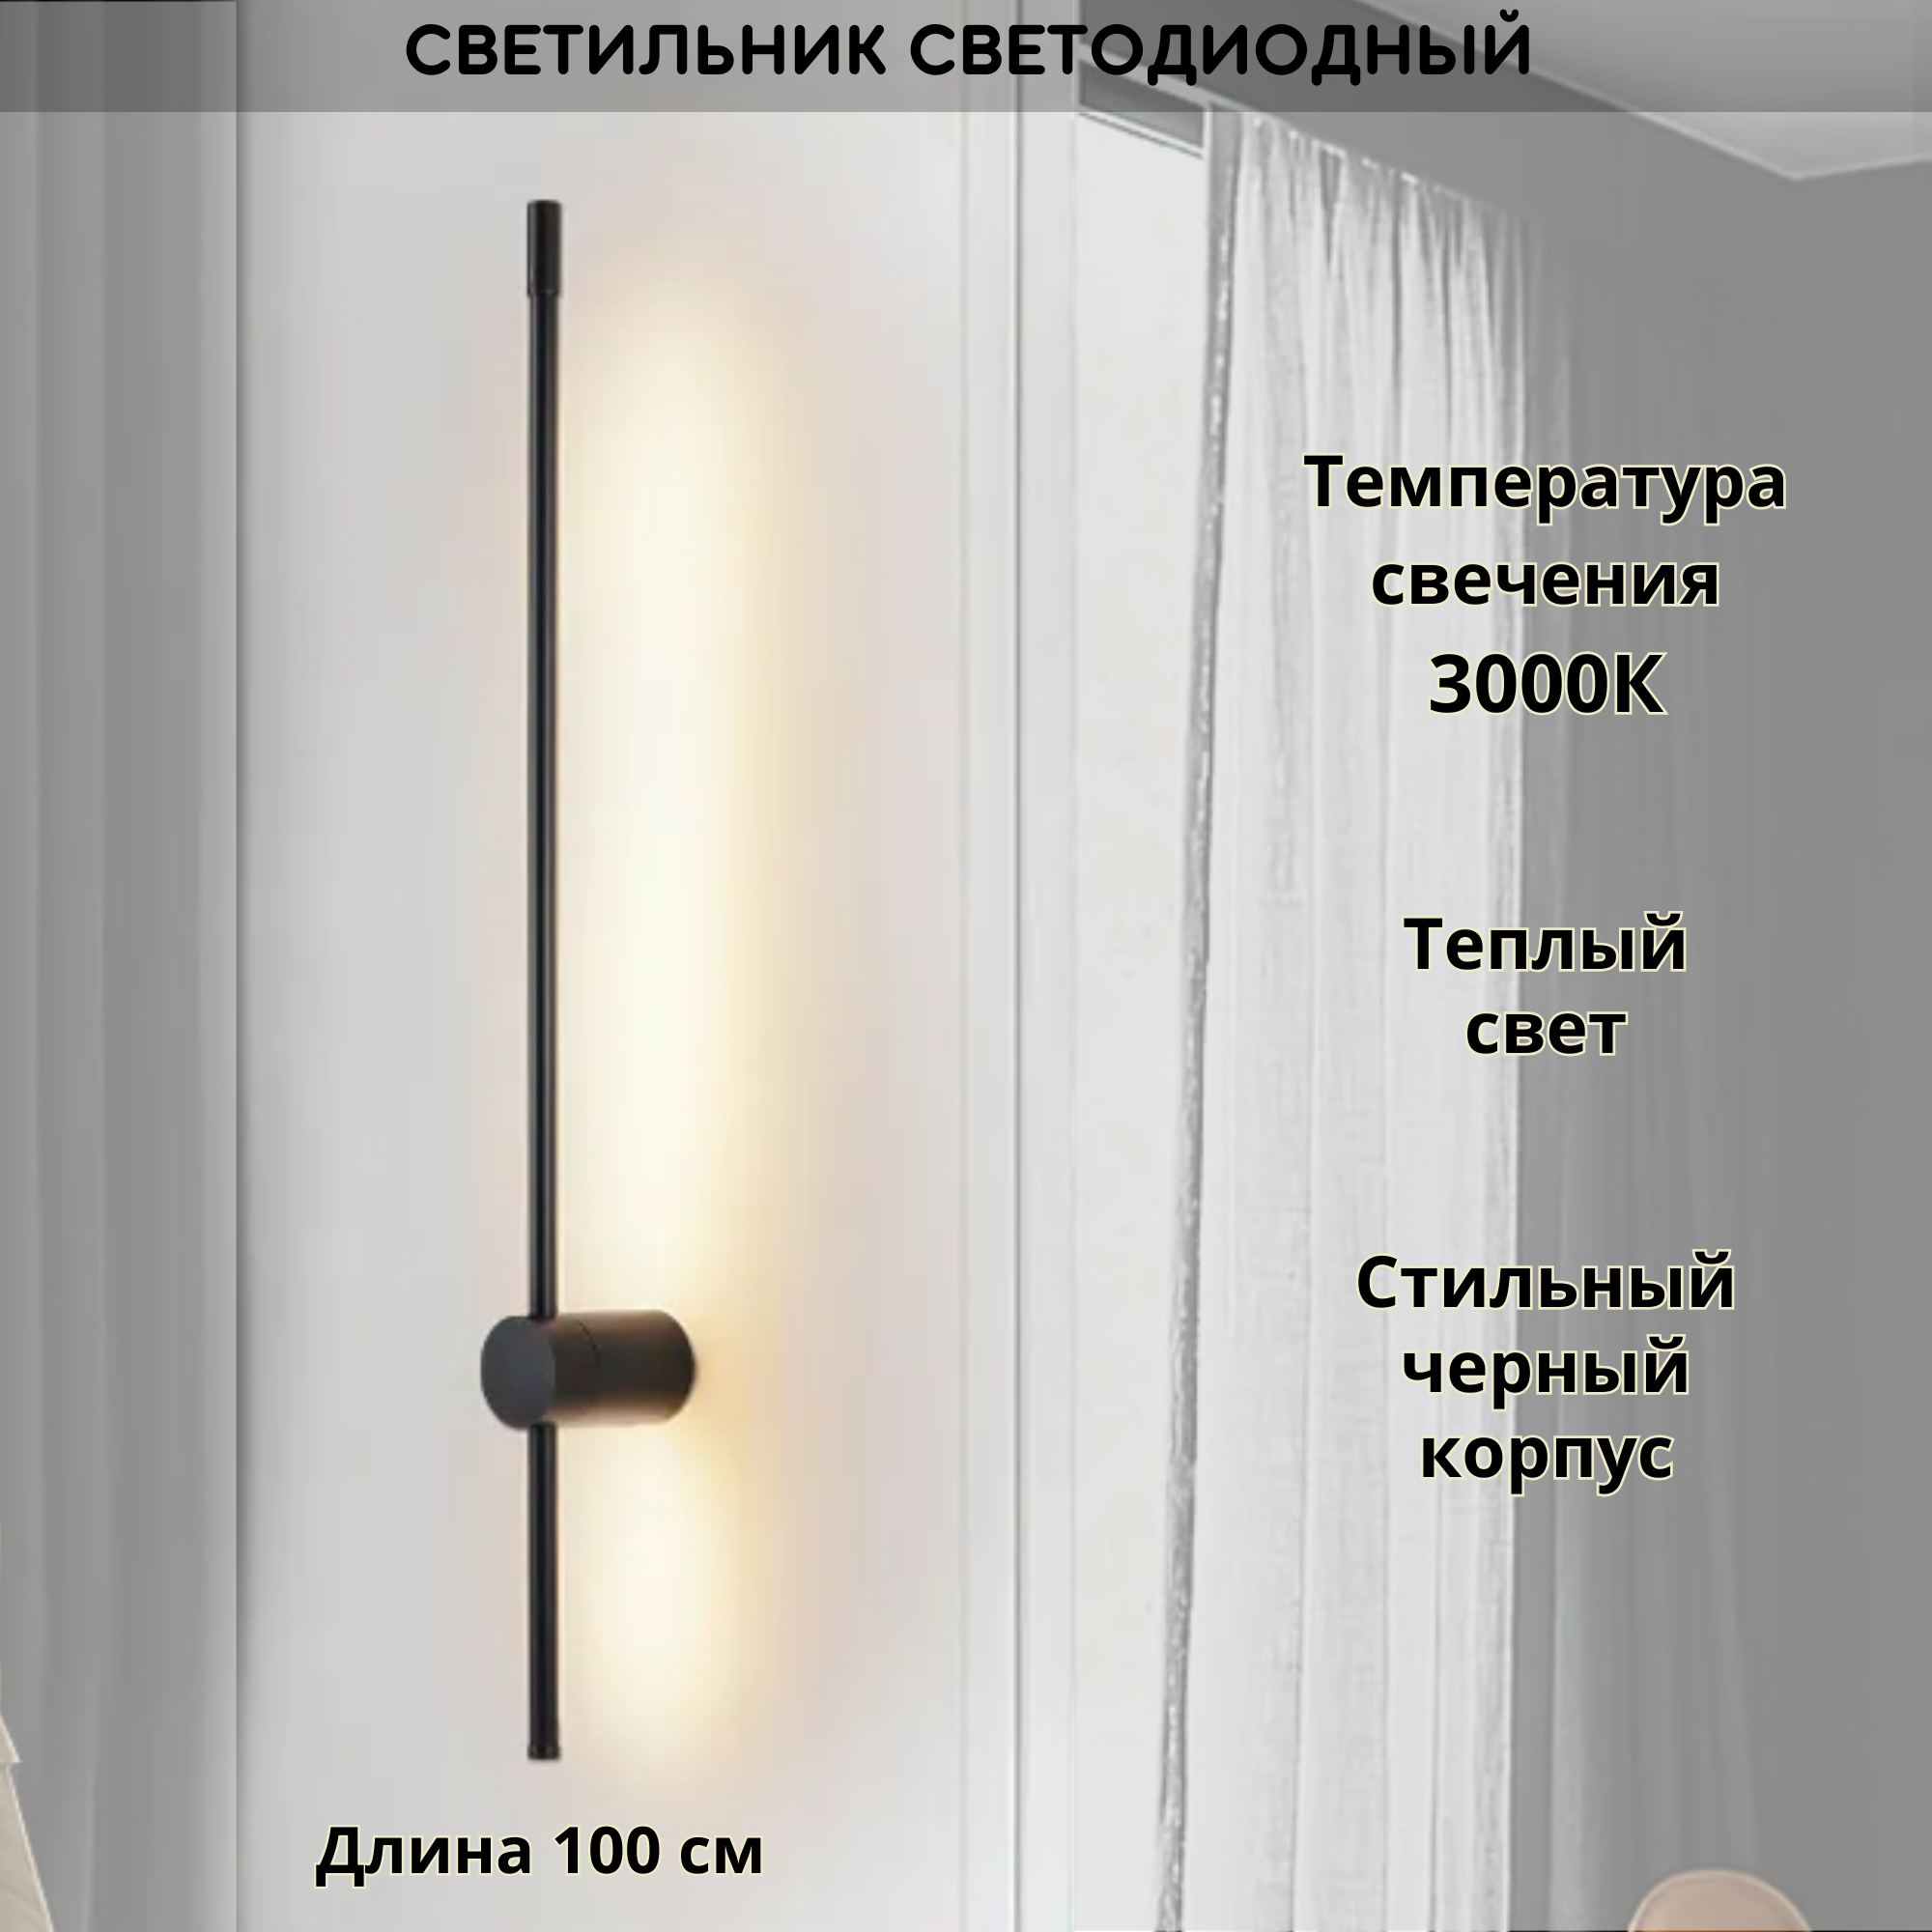 Светильник настенный светодиодный FEDOTOV линейный 3000К 100см черный